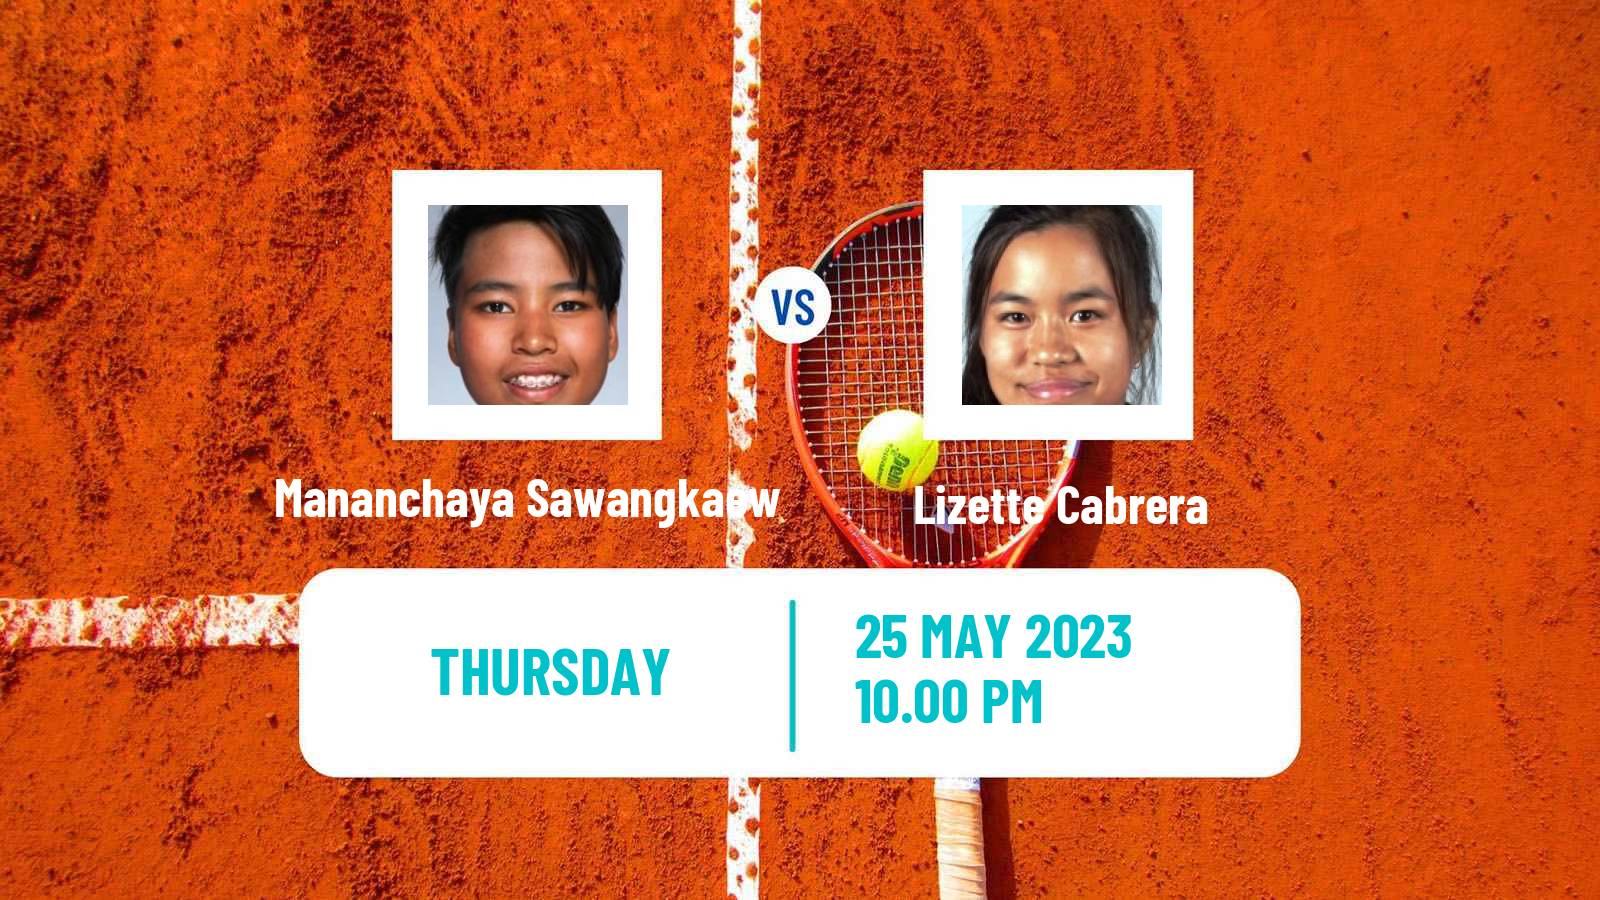 Tennis ITF W25 Goyang Women Mananchaya Sawangkaew - Lizette Cabrera